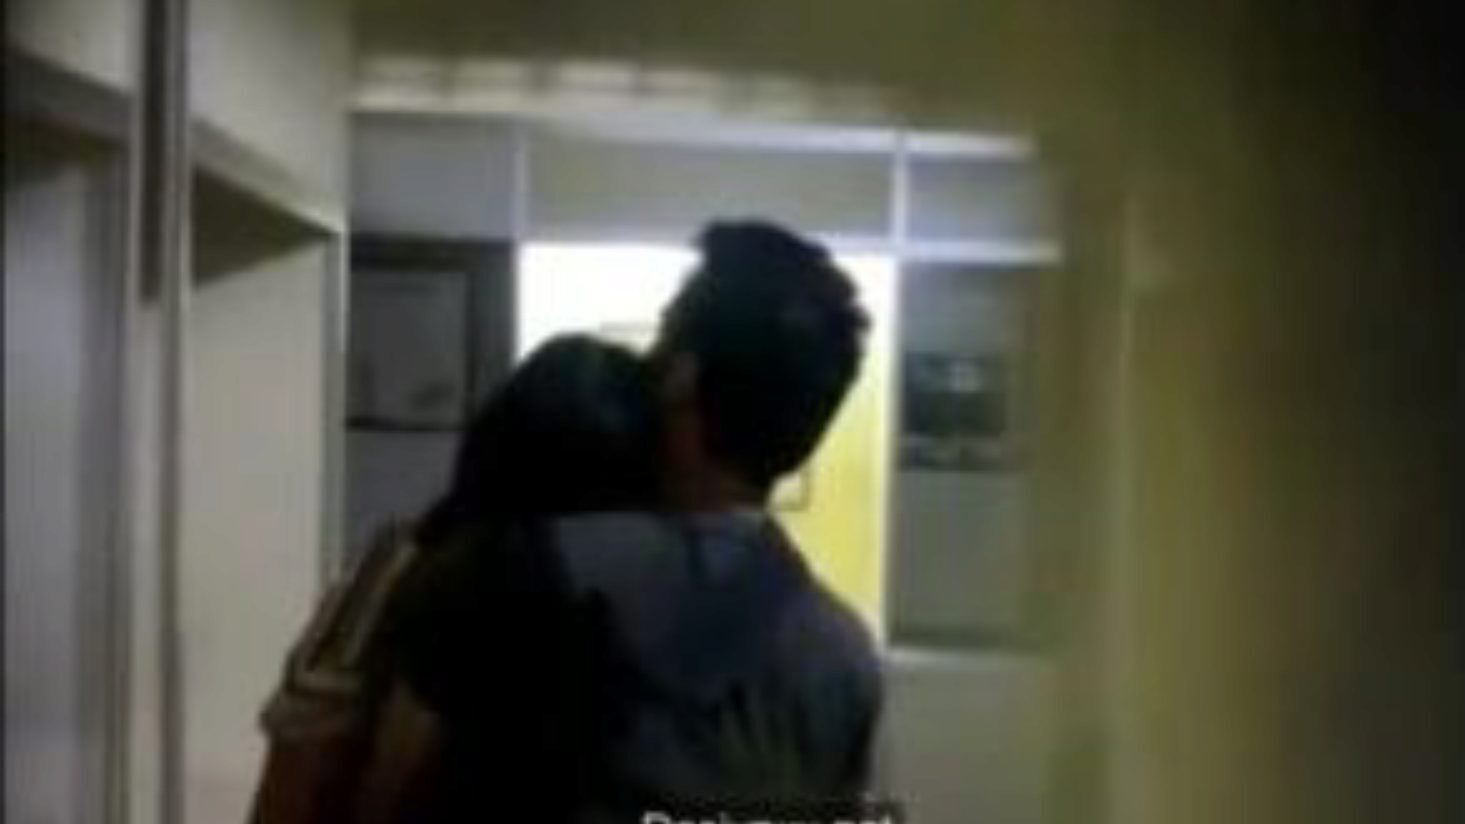 iubitorii de colegiu sărutându-se în camera de depozitare, porno 7a: xhamster urmărește iubitorii de colegiu sărutându-se în camera de depozit episod pe xhamster, resursa web superlativ de dracu-a-thon cu o mulțime de bărbați indieni care se sărută gratuit și scene de filme porno xxx de colegiu